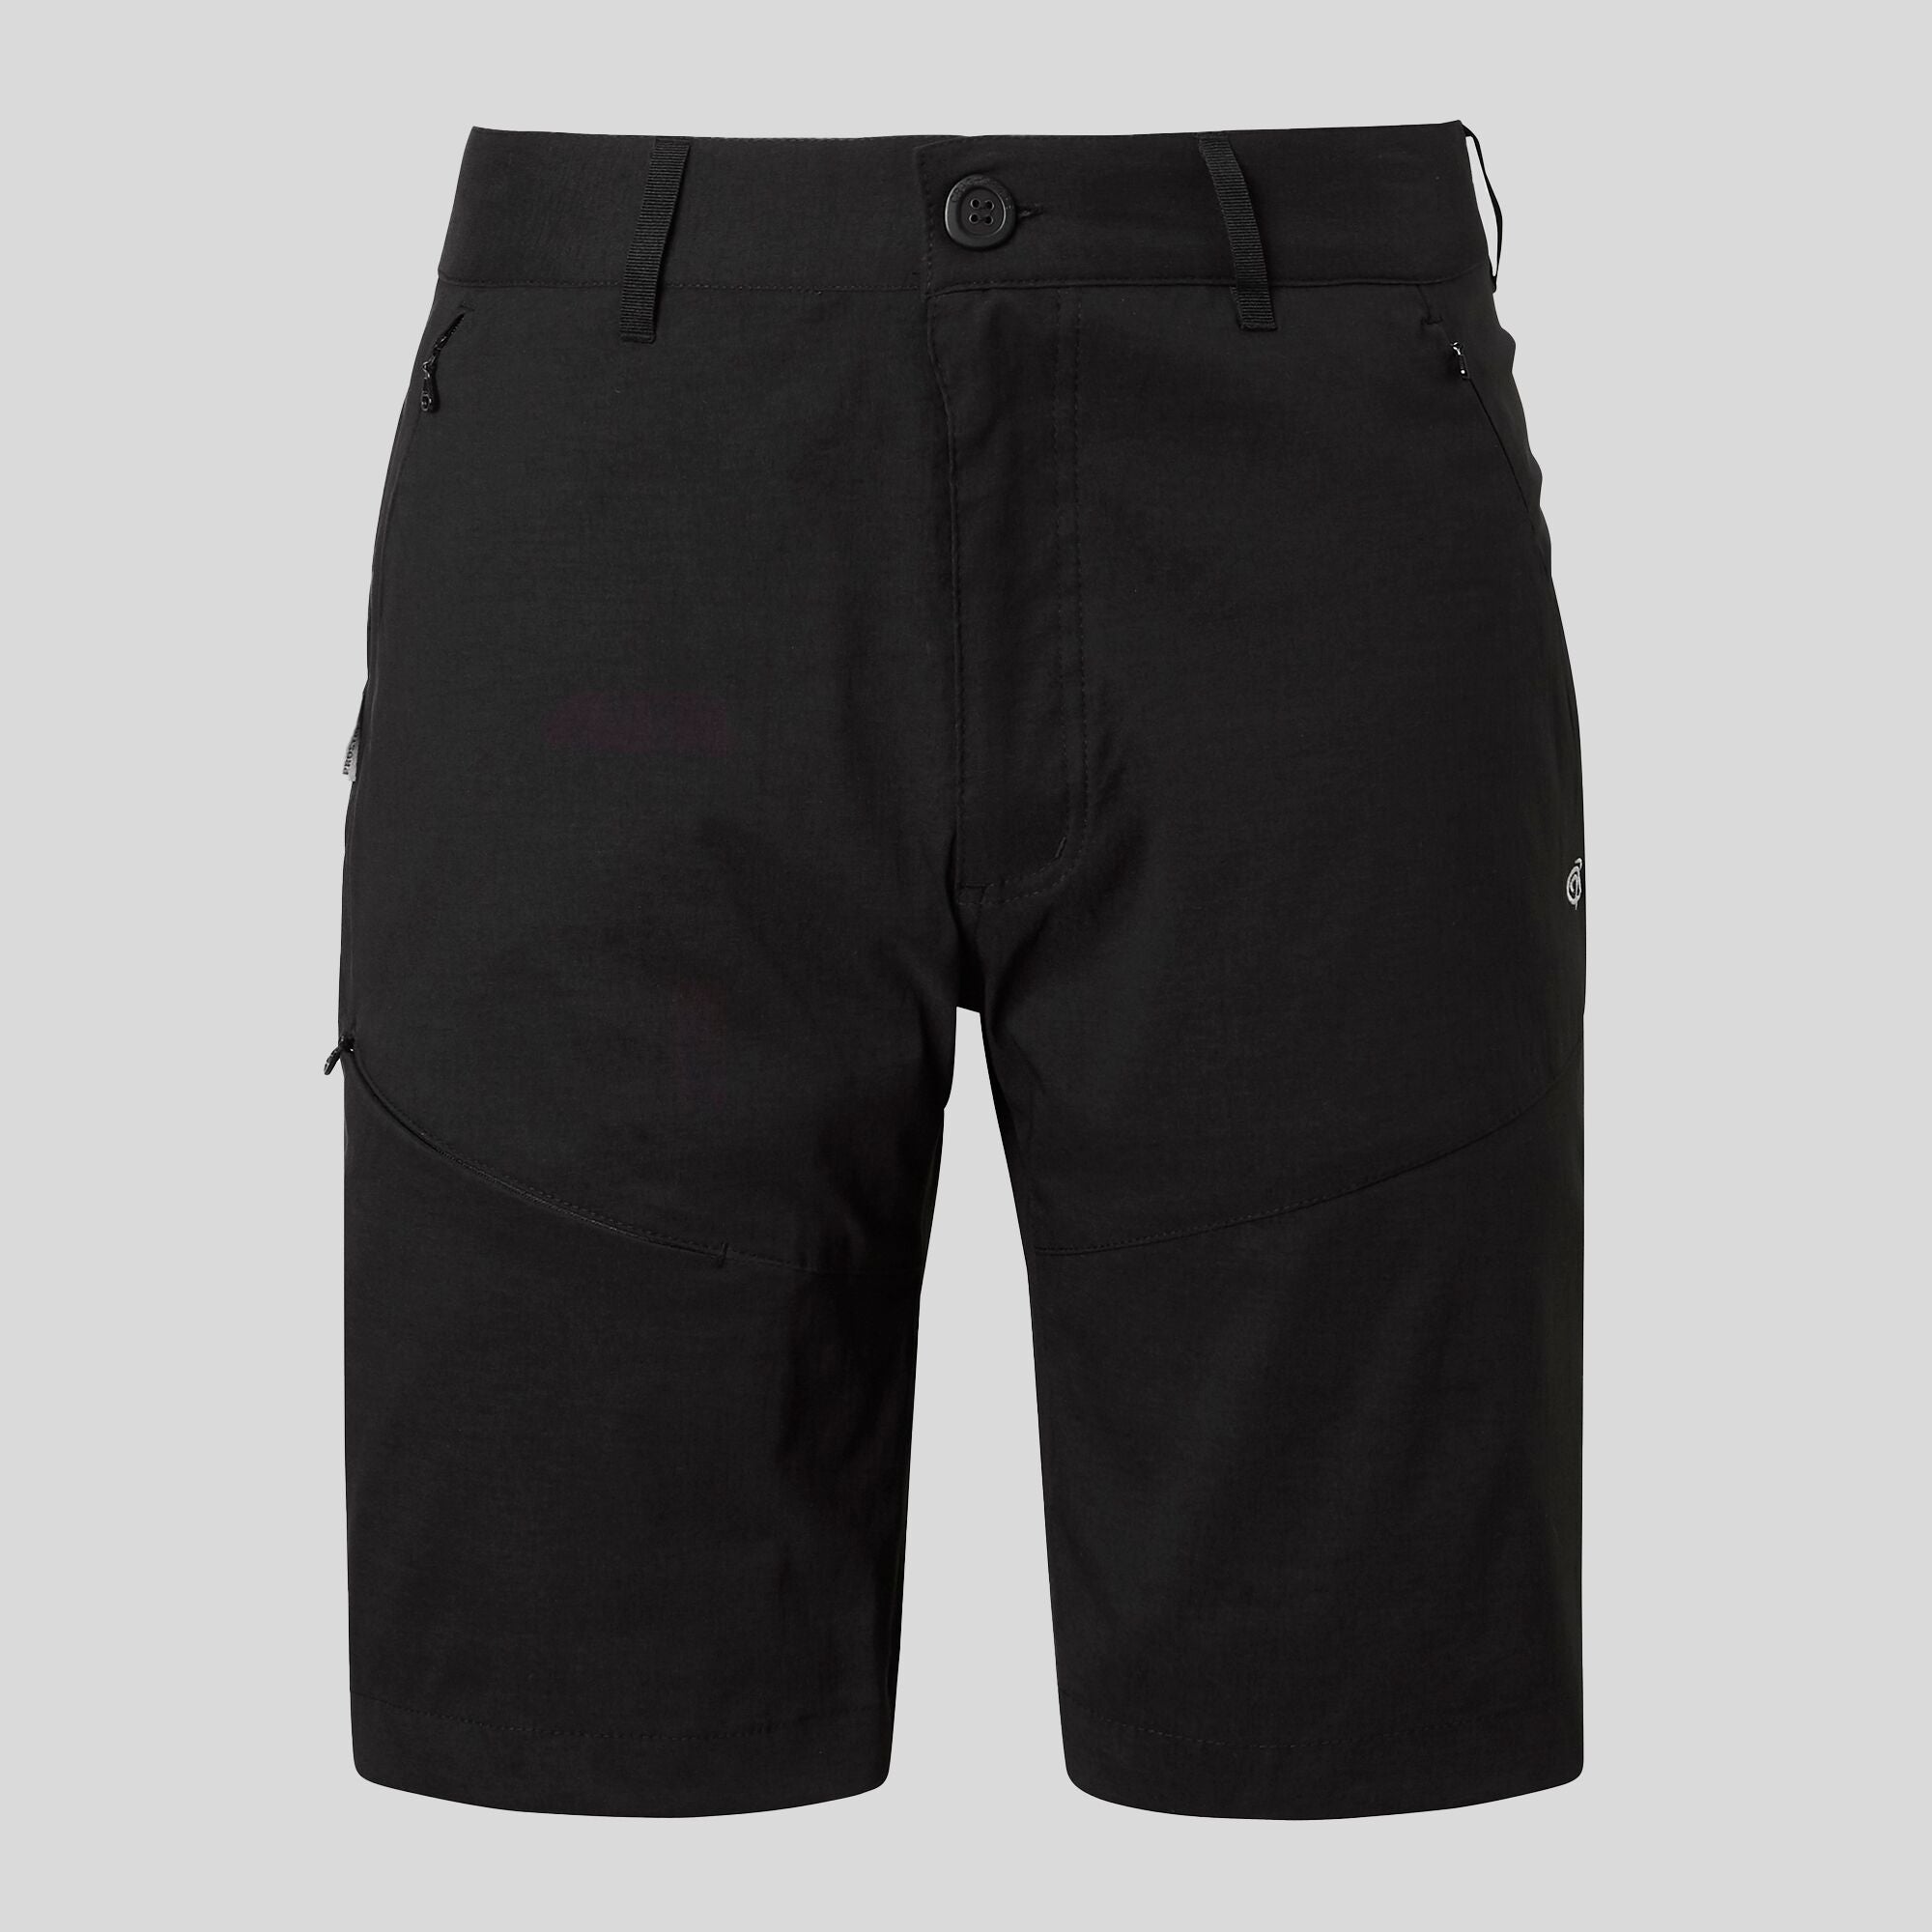 Men's Kiwi Pro Shorts | Black